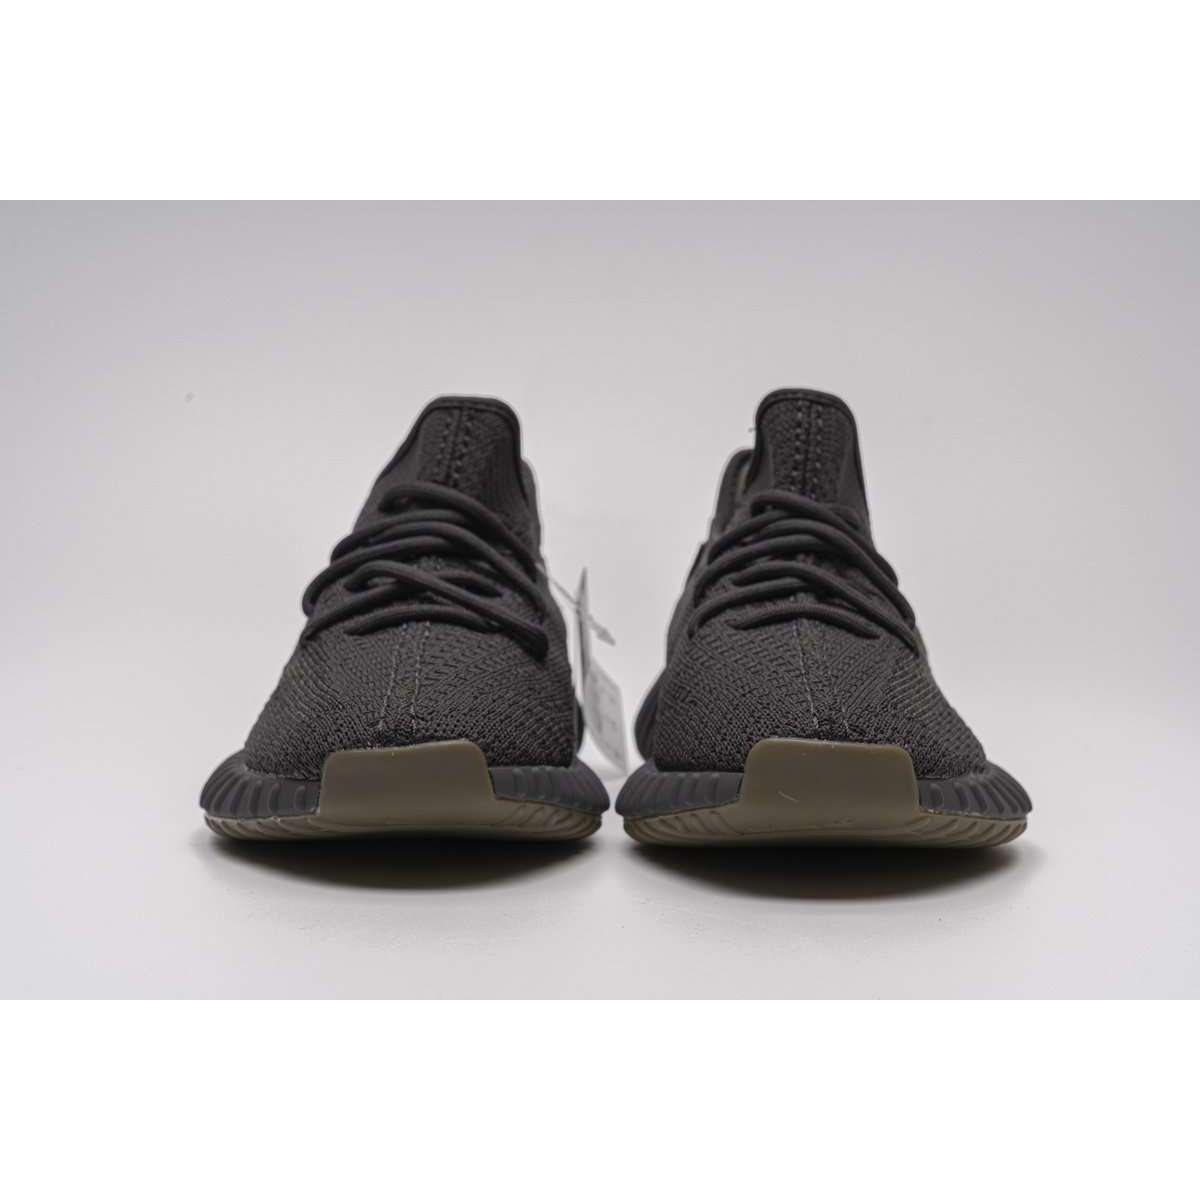 Adidas Yeezy Slide ResinX Kanye West slippers for men women.